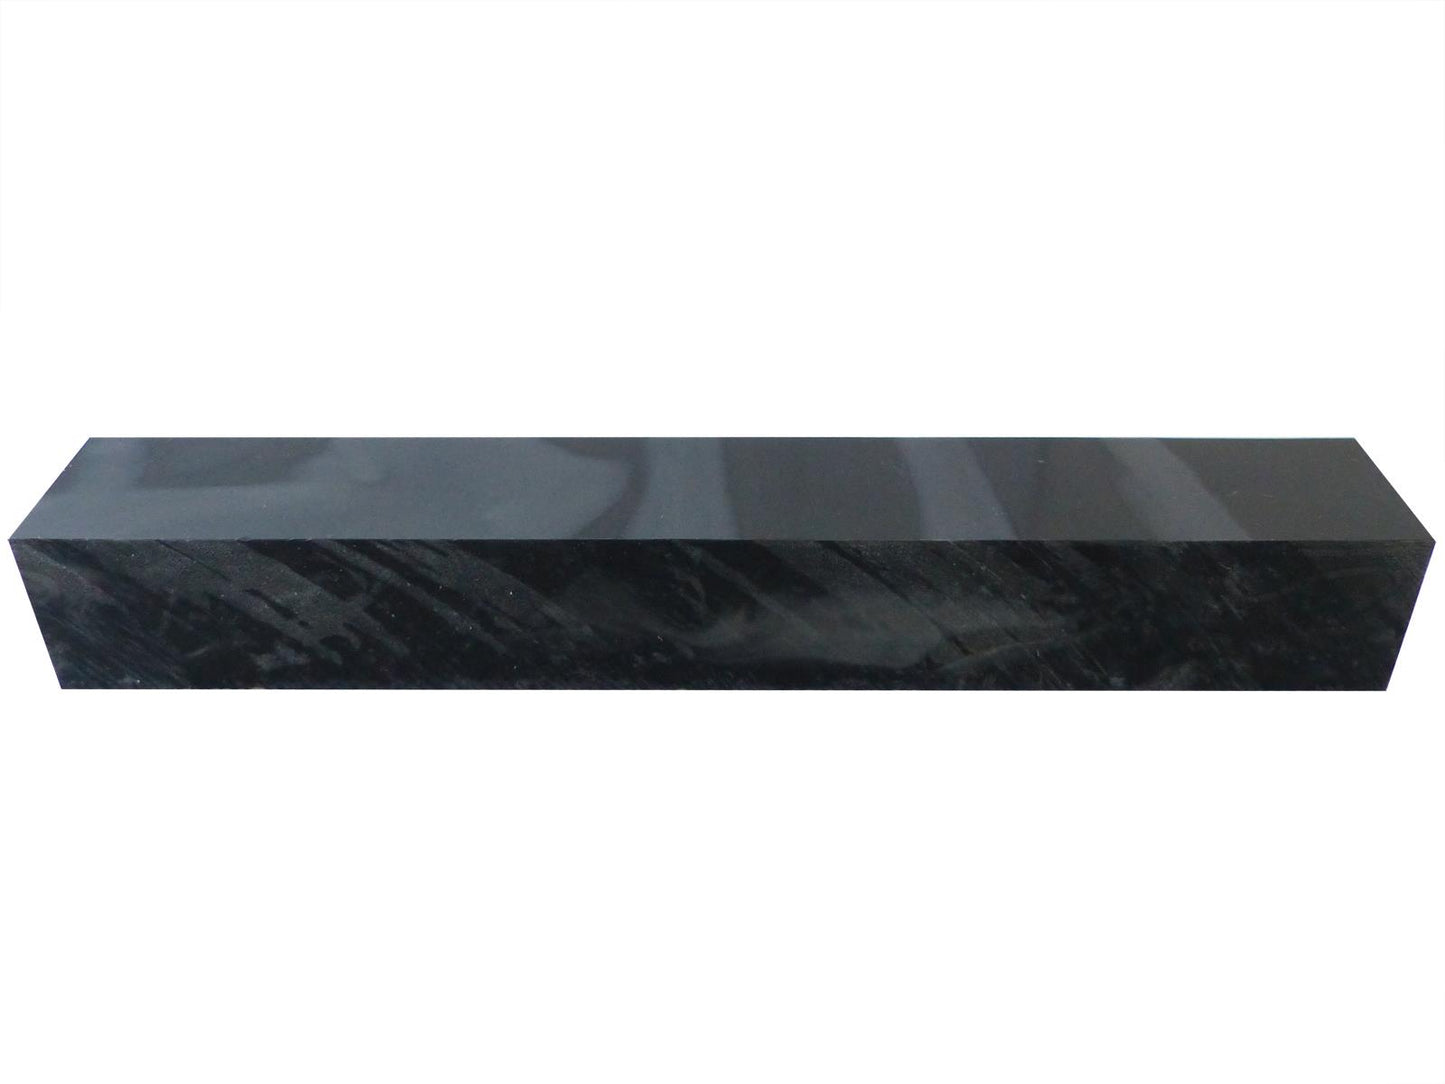 Turners' Mill Kirinite Carbon Abstract Kirinite Acrylic Pen Blank - 150x20x20mm (5.9x0.79x0.79"), 6x3/4x3/4"